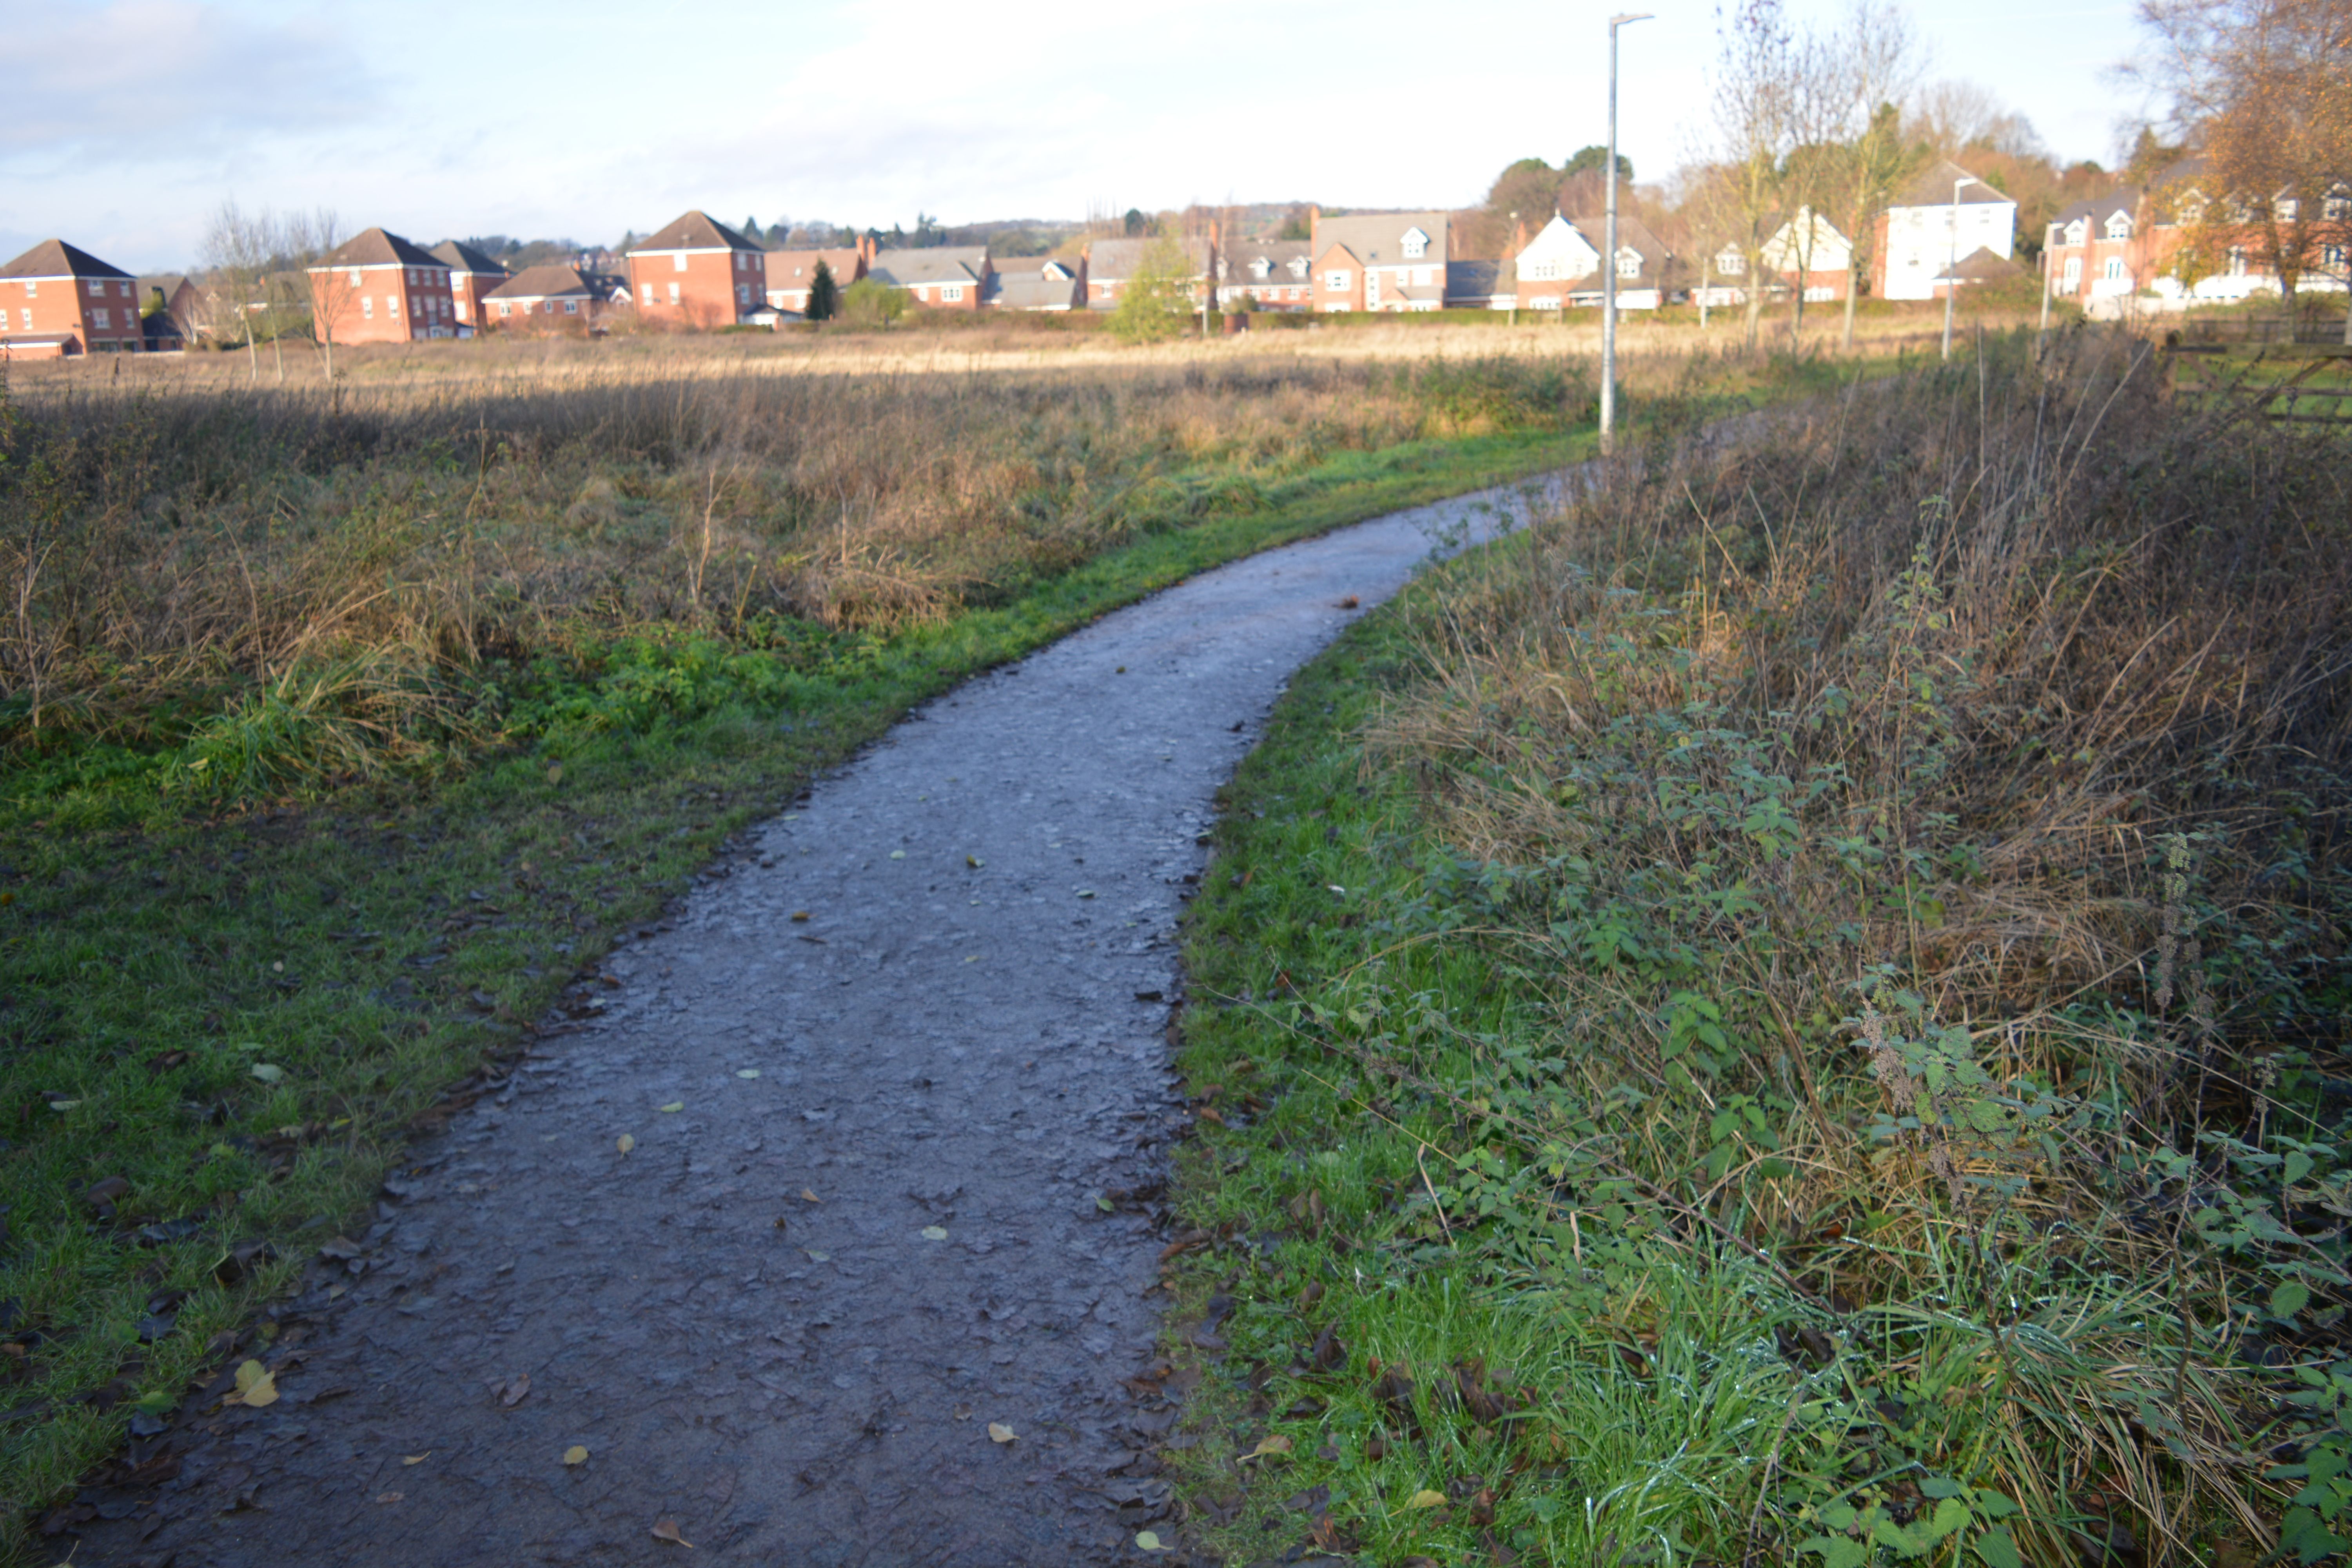 Tarmac path towards Holloway Road